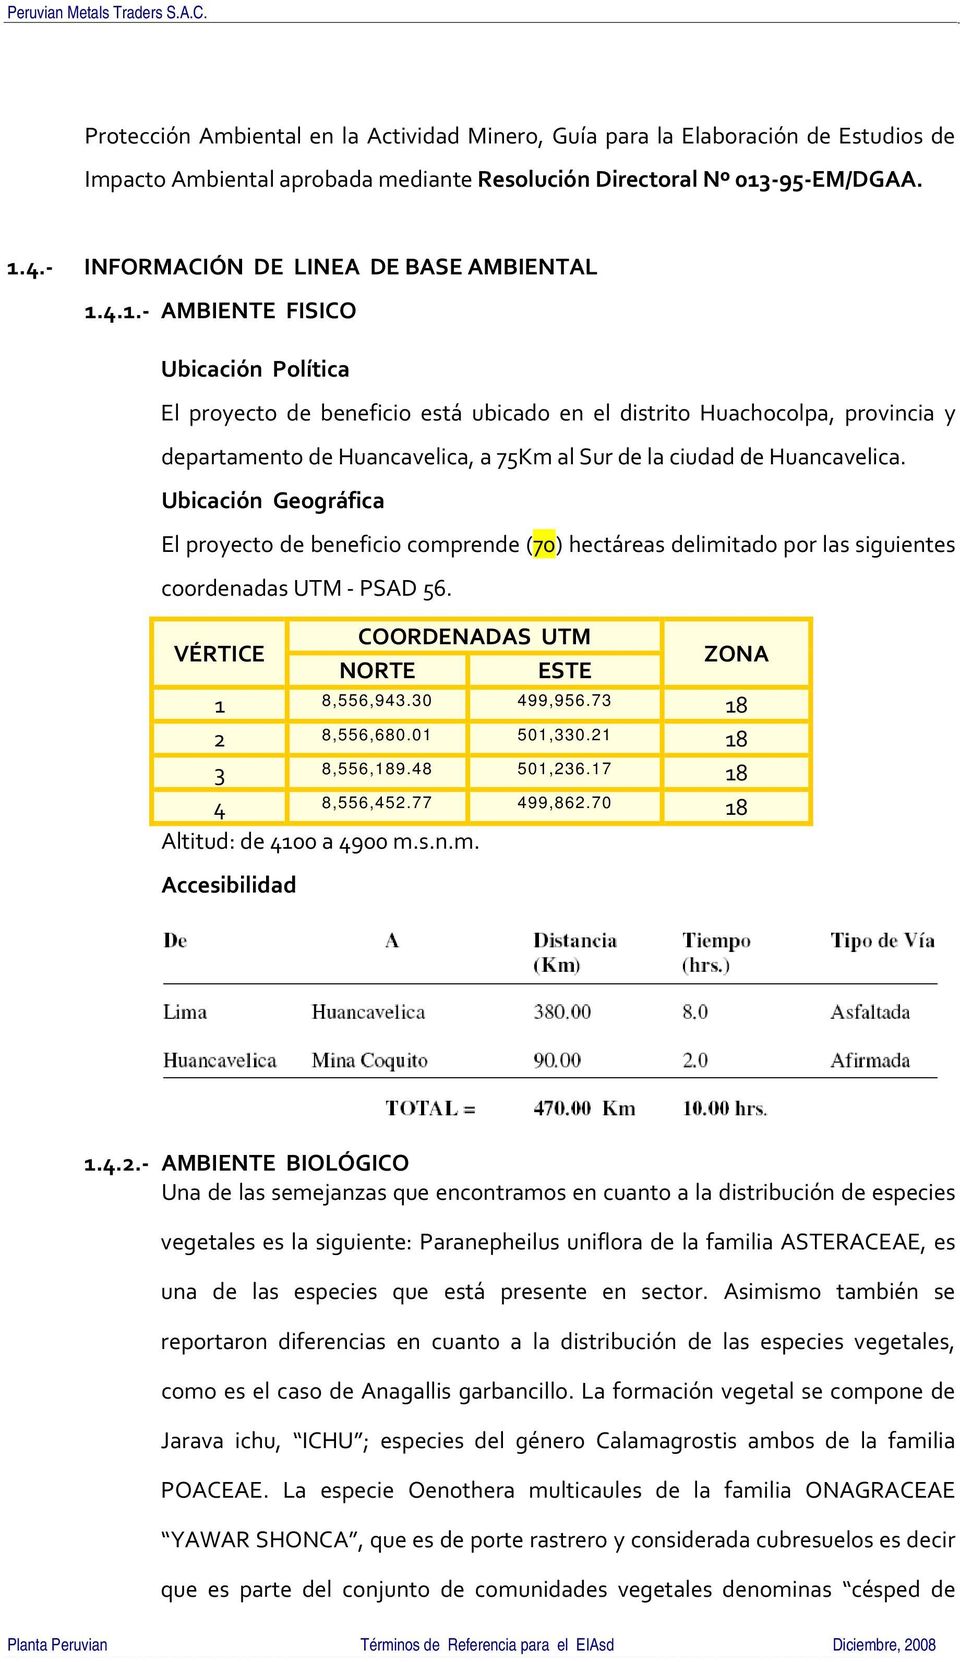 4.1. AMBIENTE FISICO Ubicación Política El proyecto de beneficio está ubicado en el distrito Huachocolpa, provincia y departamento de Huancavelica, a 75Km al Sur de la ciudad de Huancavelica.